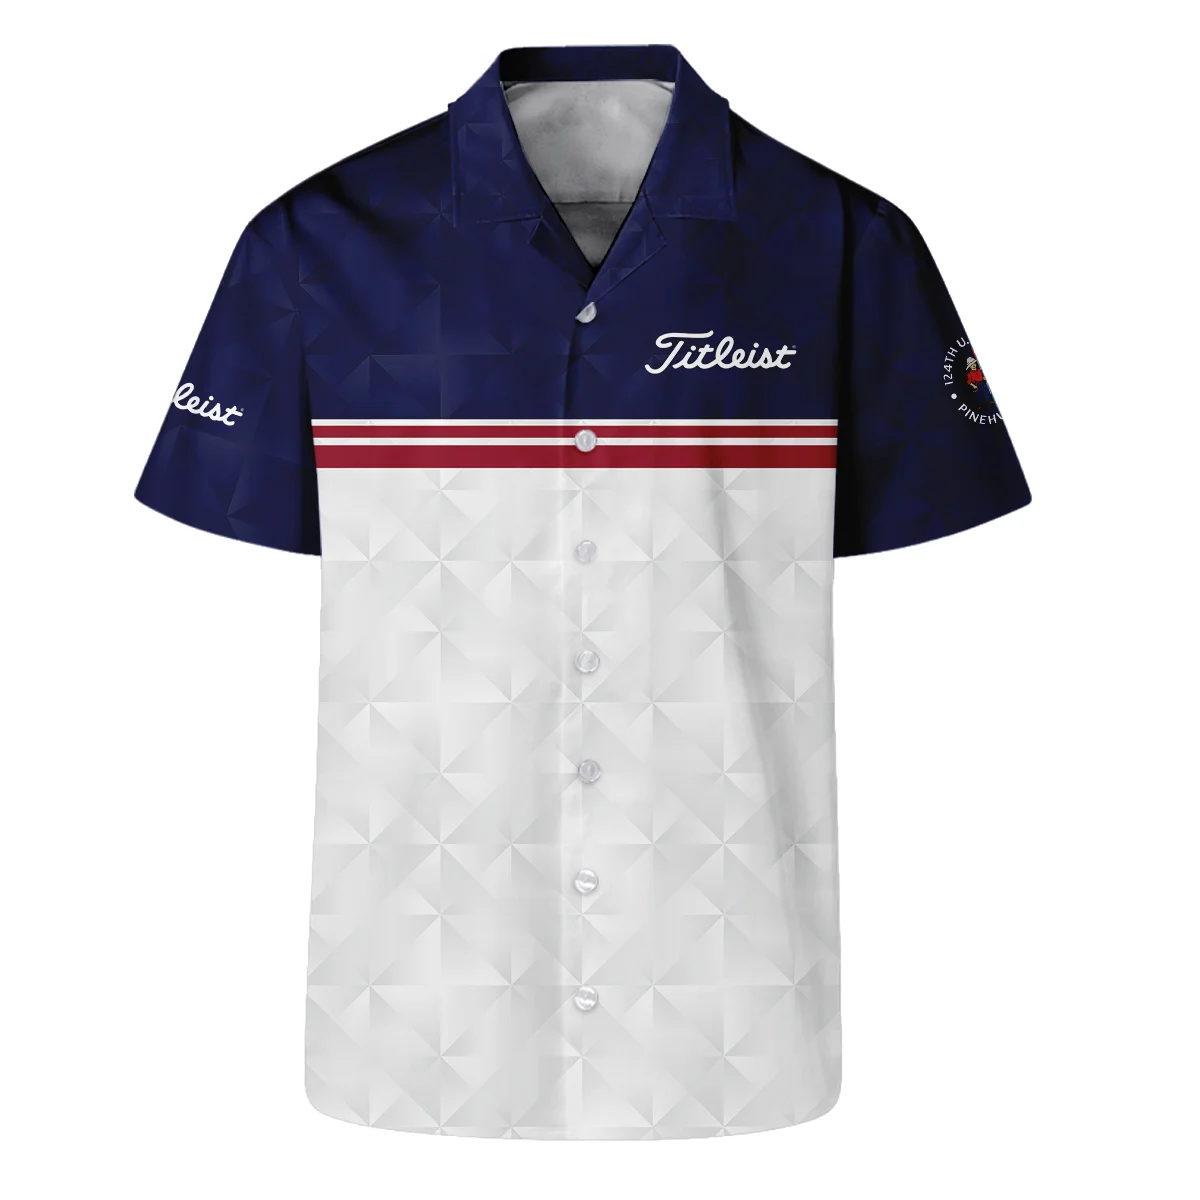 Golf Sport 124th U.S. Open Pinehurst Titleist Zipper Hoodie Shirt Dark Blue White Abstract Geometric Triangles All Over Print Zipper Hoodie Shirt